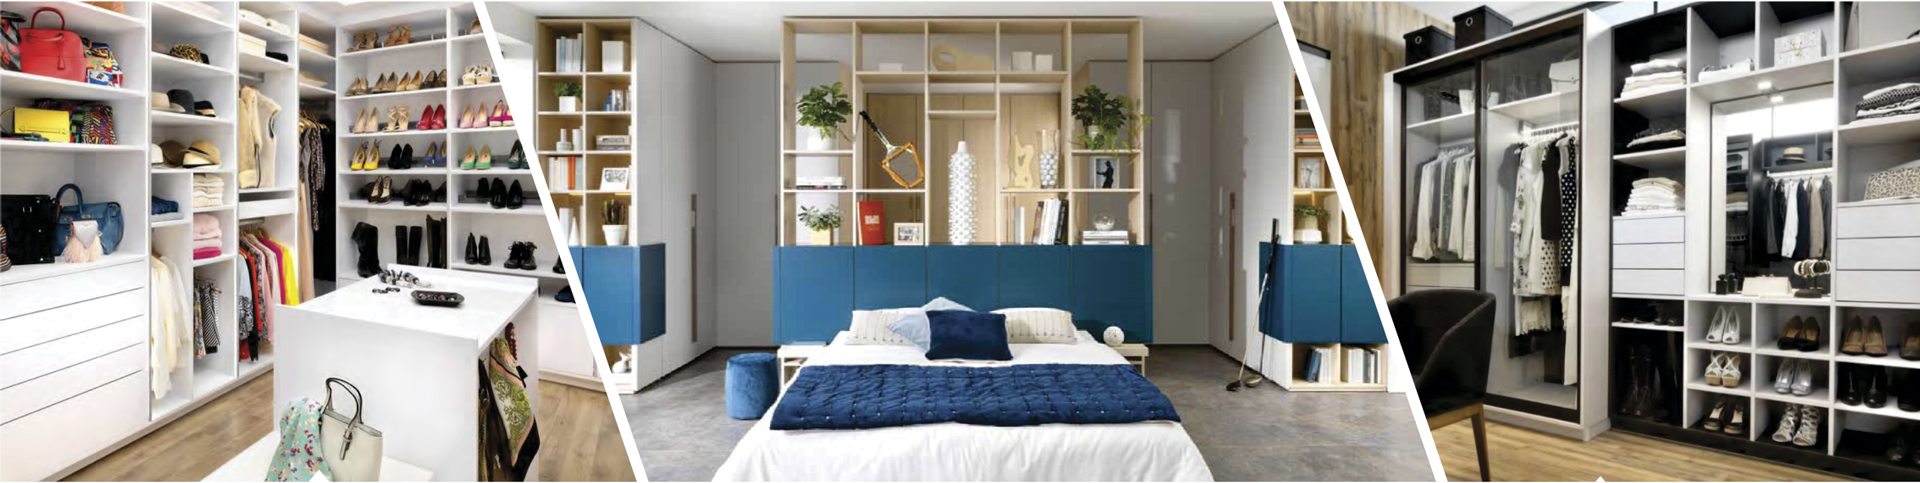 Muebles Melamínicos para hogar y oficinas: ZAPATERAS  Diseño de armario,  Diseño de closet, Diseño de armario para dormitorio